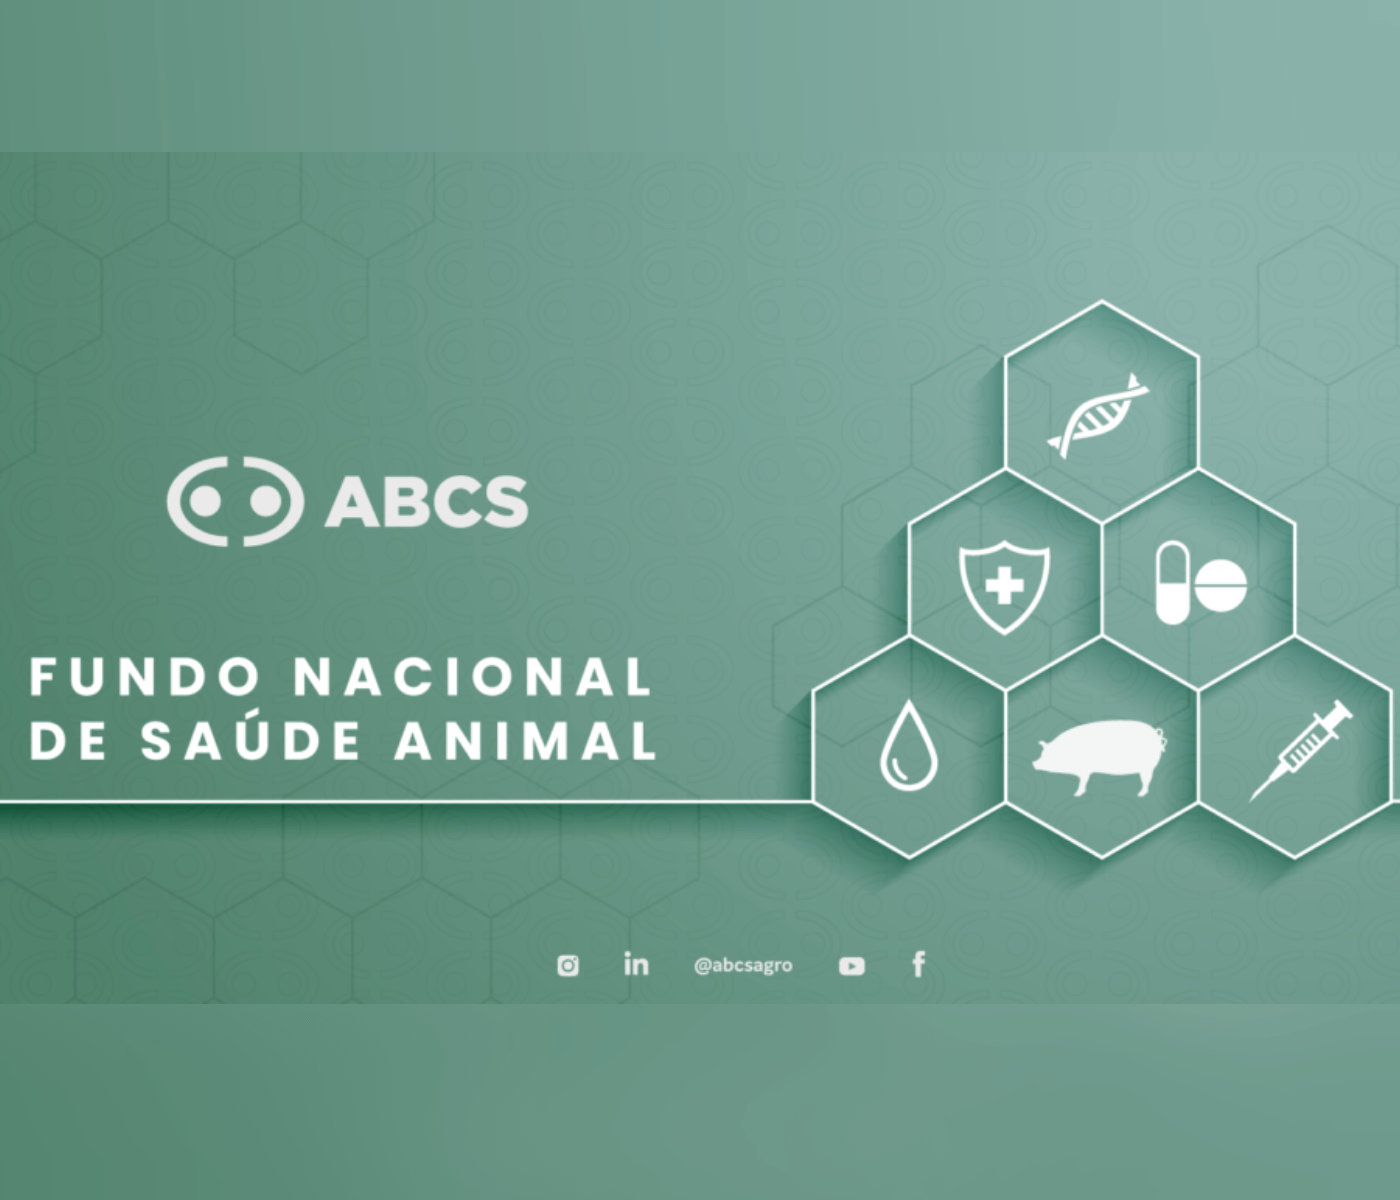 Fundo Nacional de Saúde Animal é prioridade da ABCS junto ao MAPA